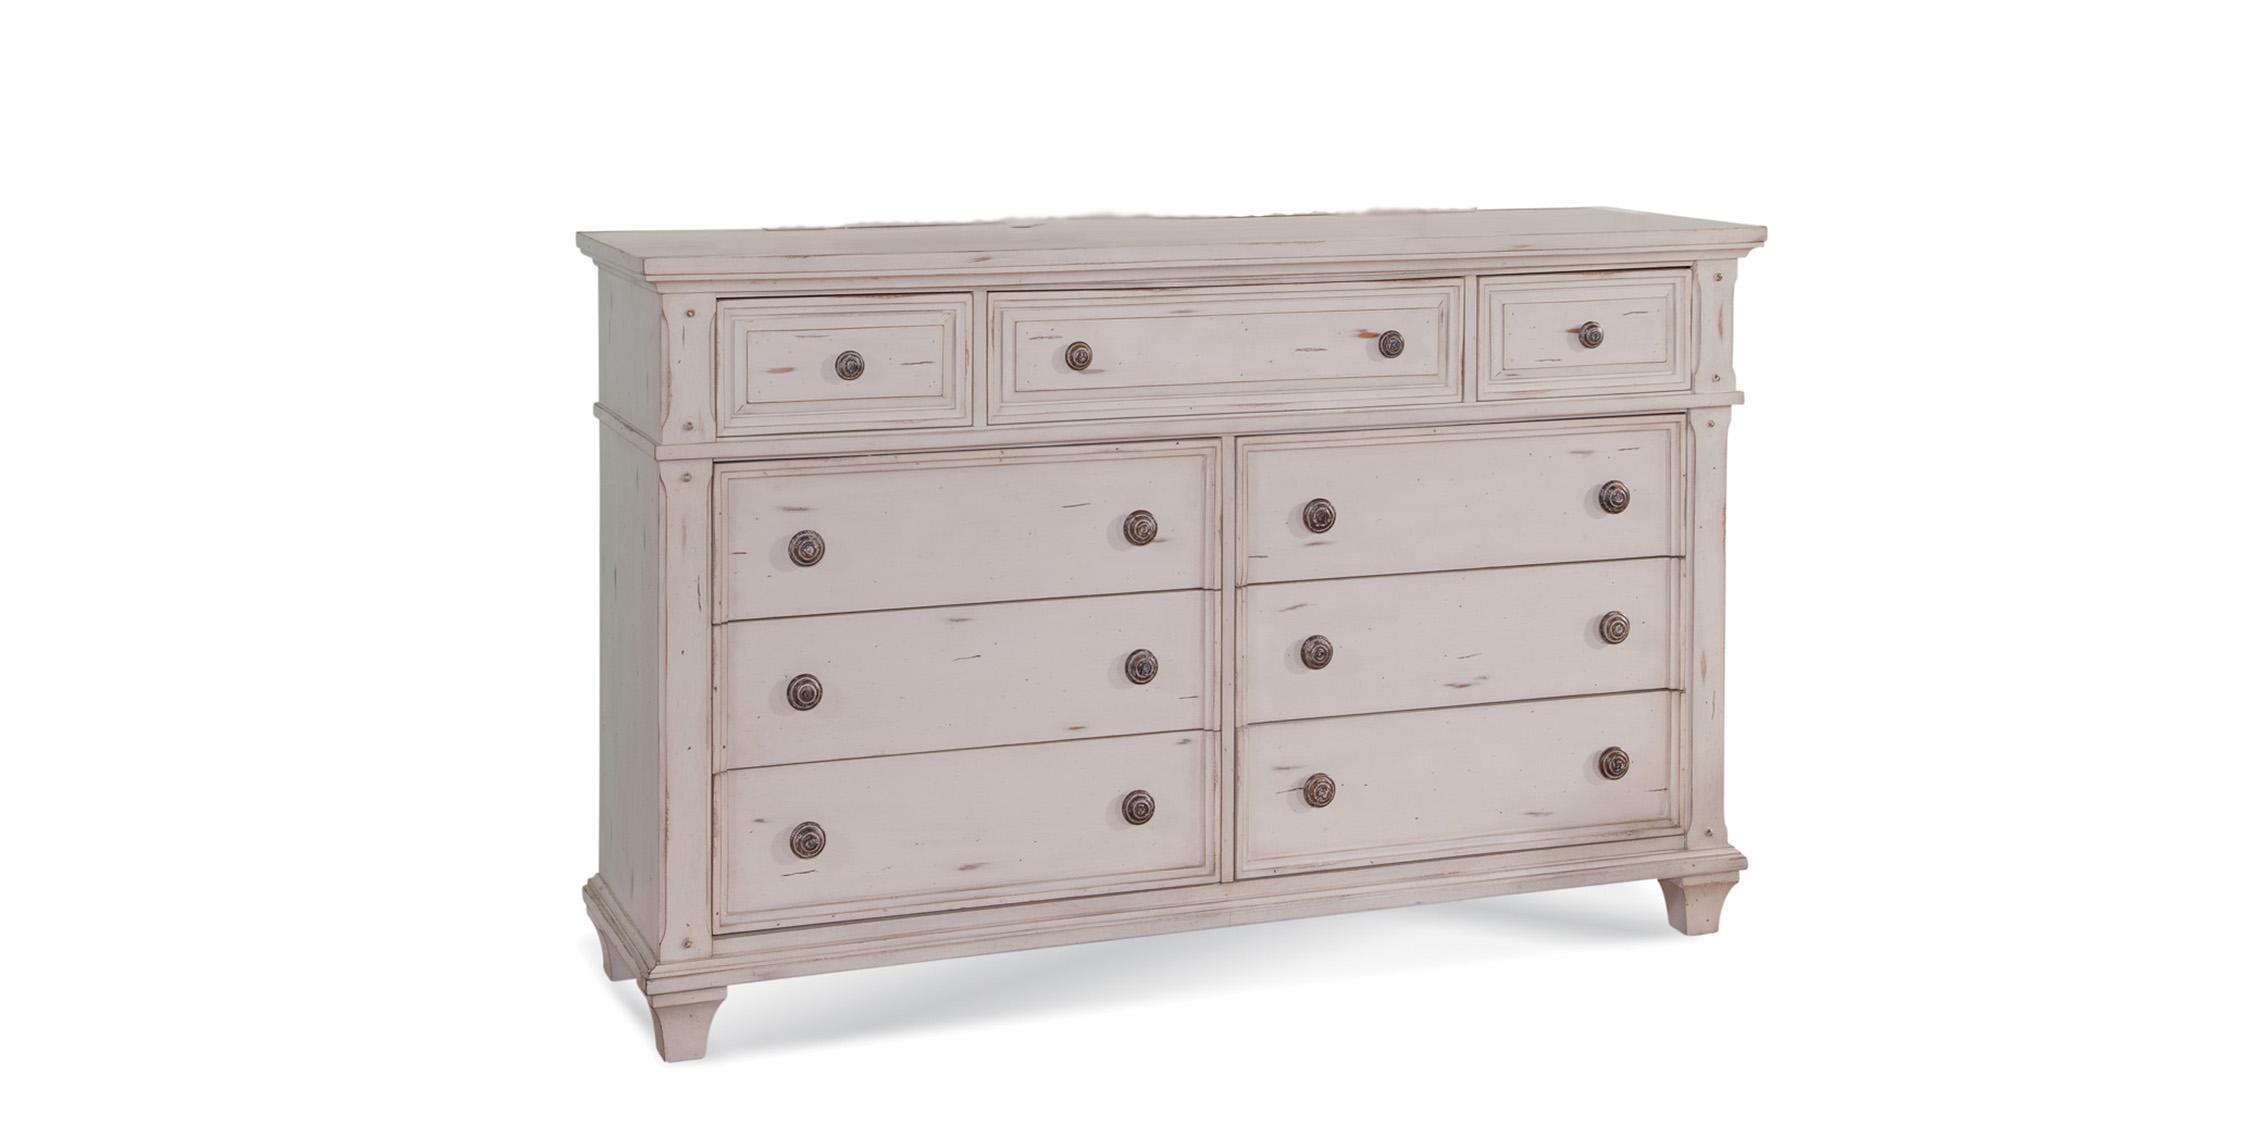 Classic, Traditional Dresser SEDONA 2410-270 2410-270 in Cobblestone, White 